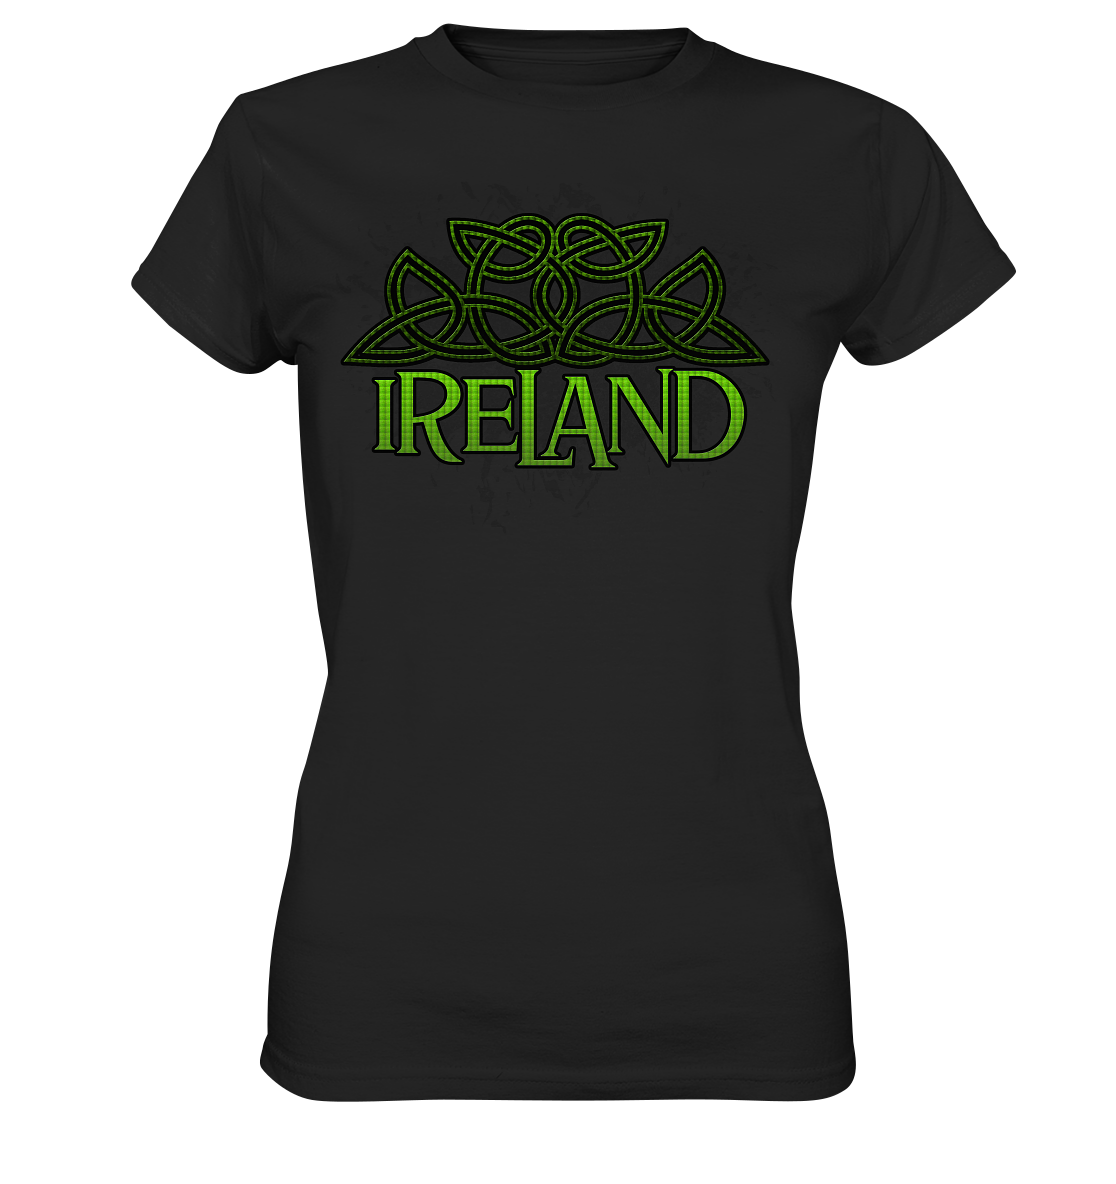 Ireland "Celtic Knot" - Ladies Premium Shirt